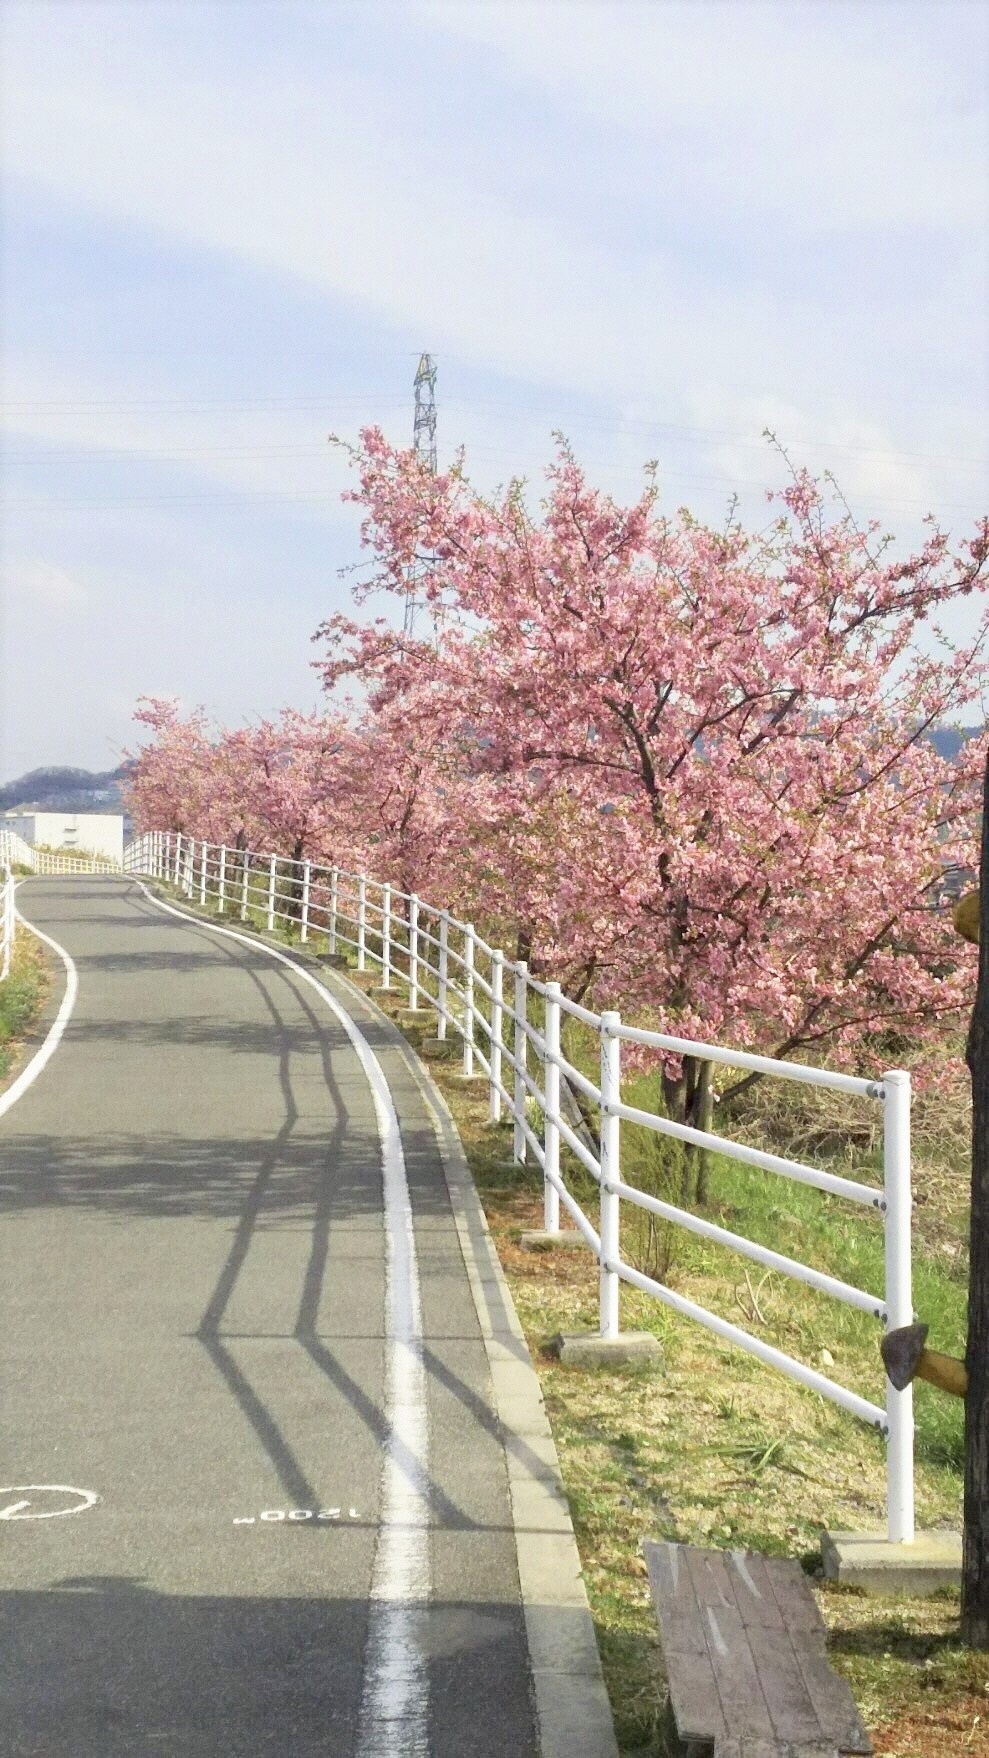 穂谷川沿いの桜並木の様子